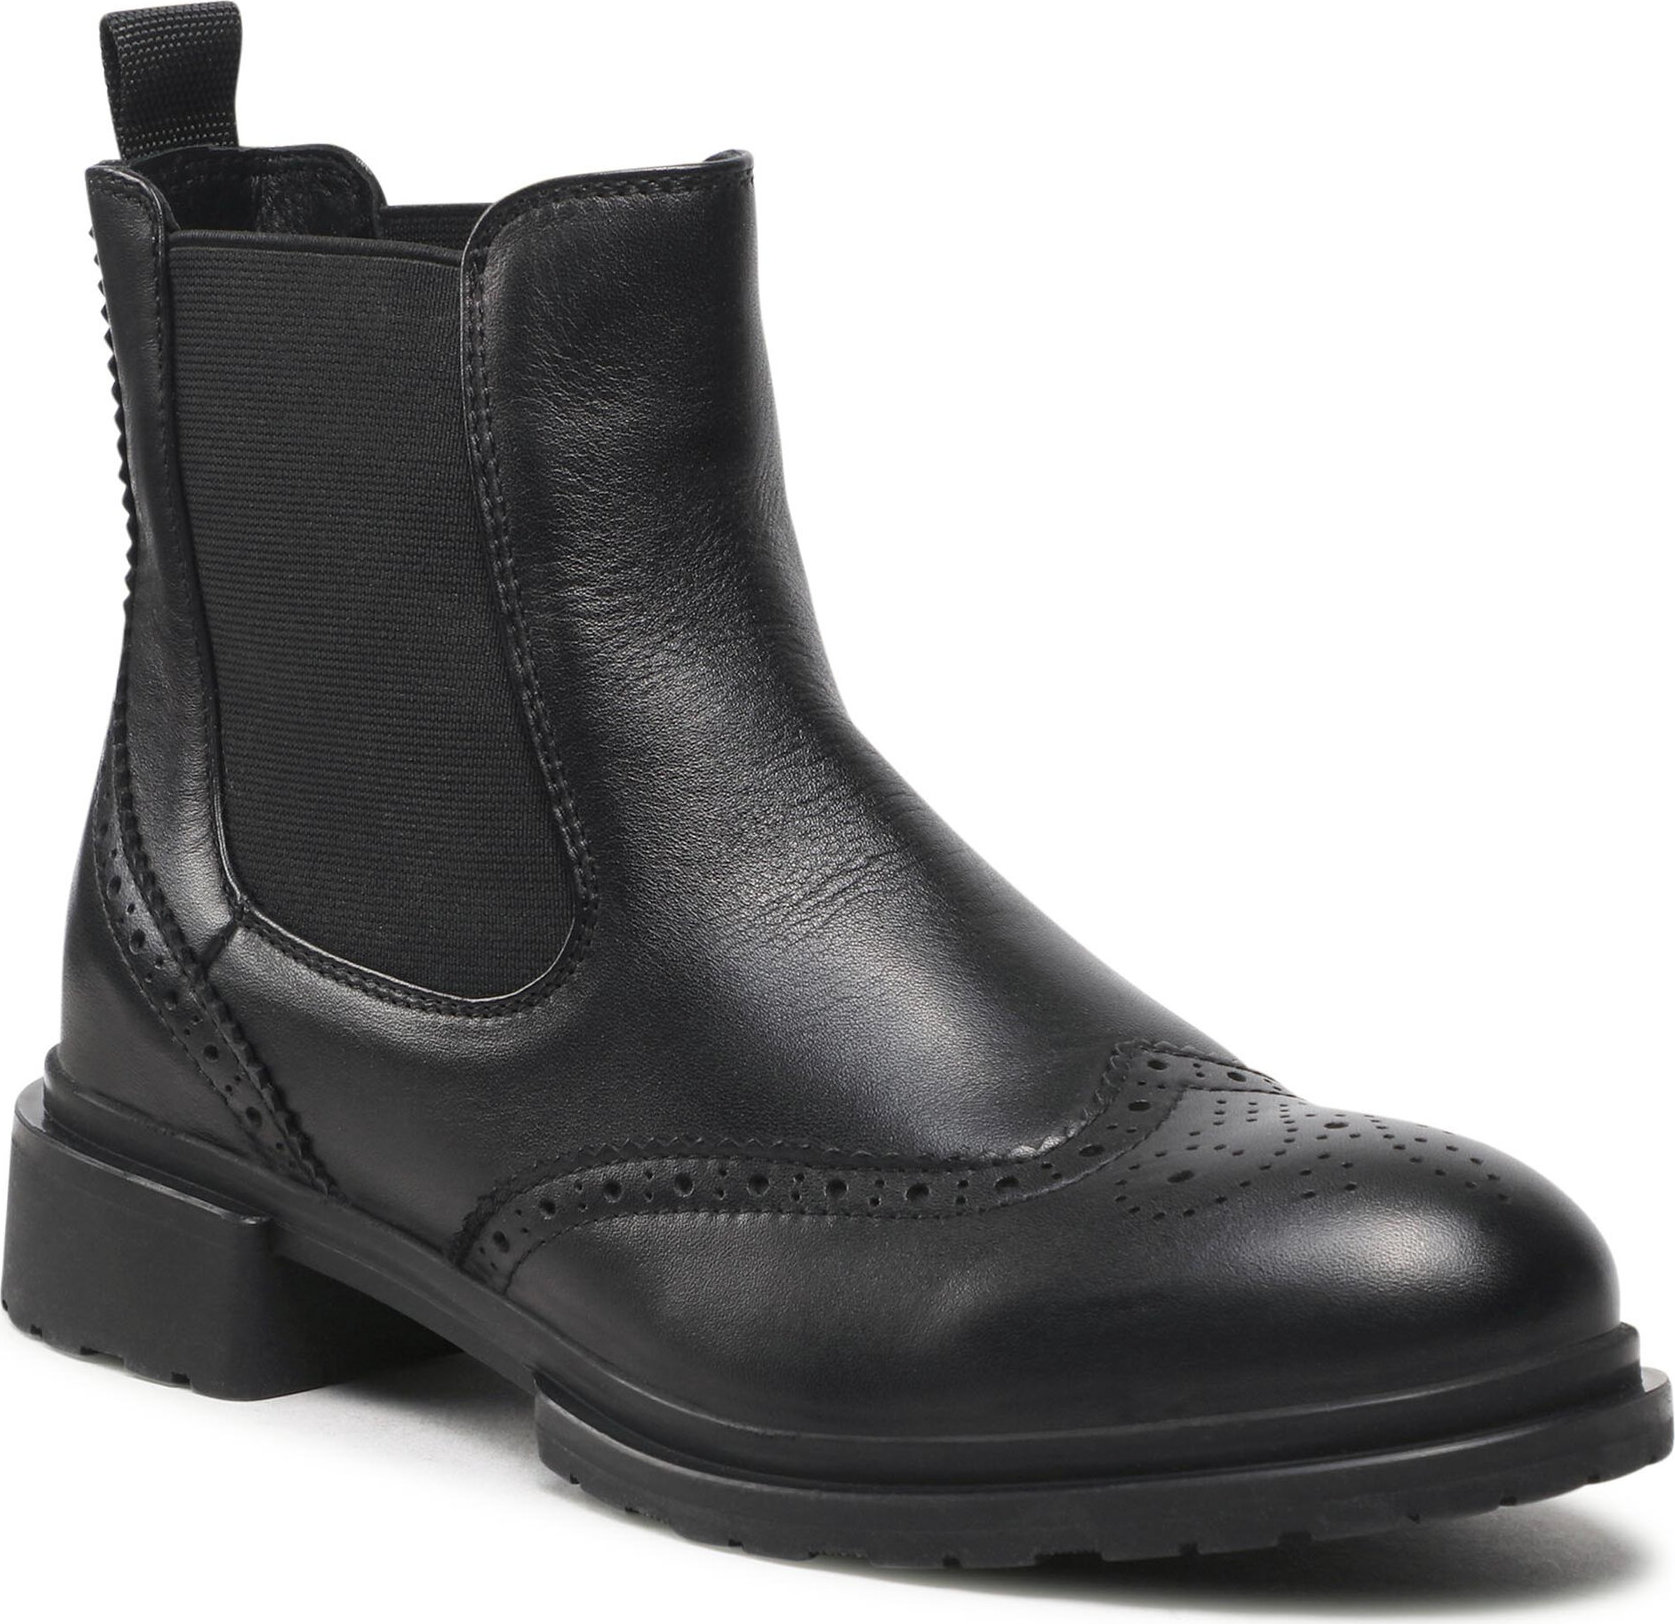 Kotníková obuv s elastickým prvkem Zenesso 38-2250029 Černá